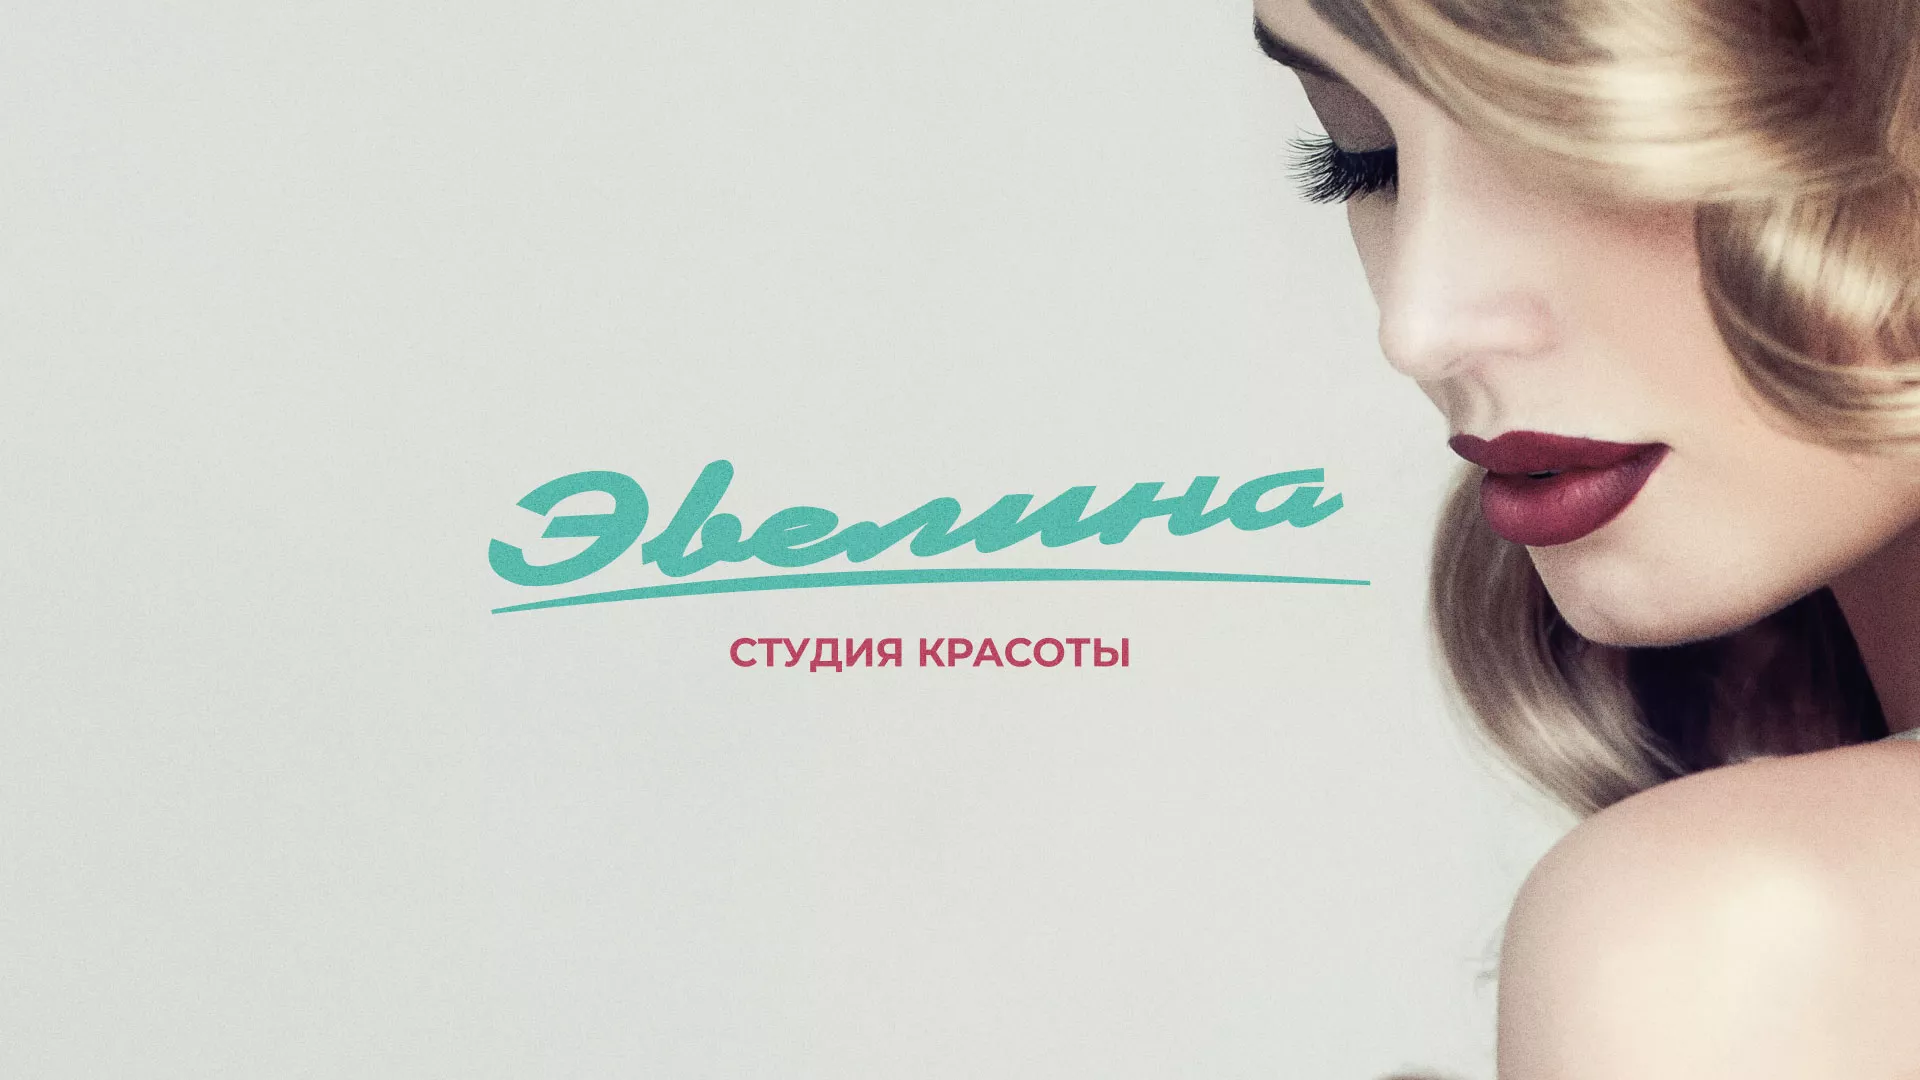 Разработка сайта для салона красоты «Эвелина» в Красноярске